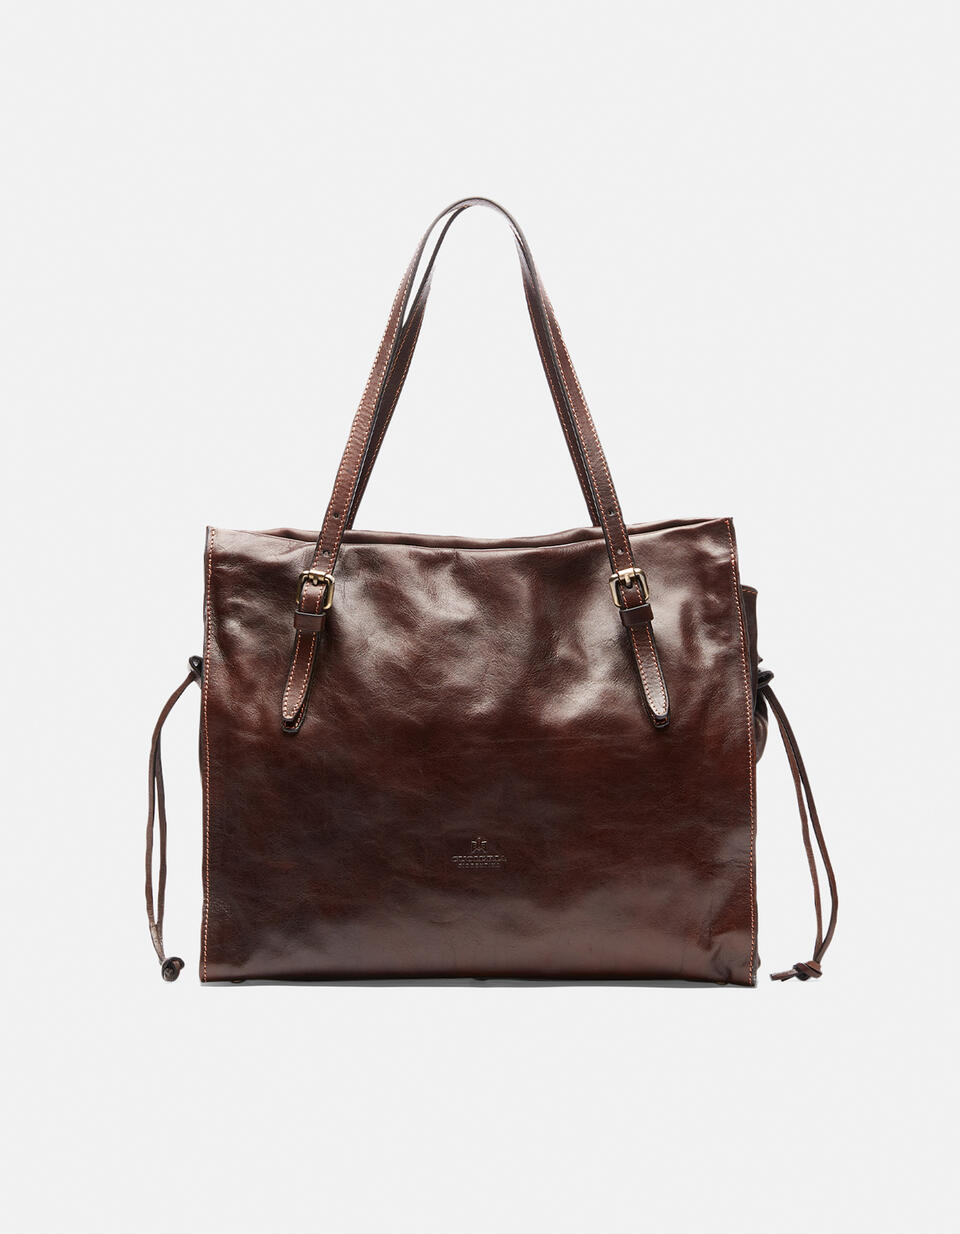 Large shopping bag - SHOPPING - WOMEN'S BAGS | bags  - SHOPPING - WOMEN'S BAGS | bagsCuoieria Fiorentina